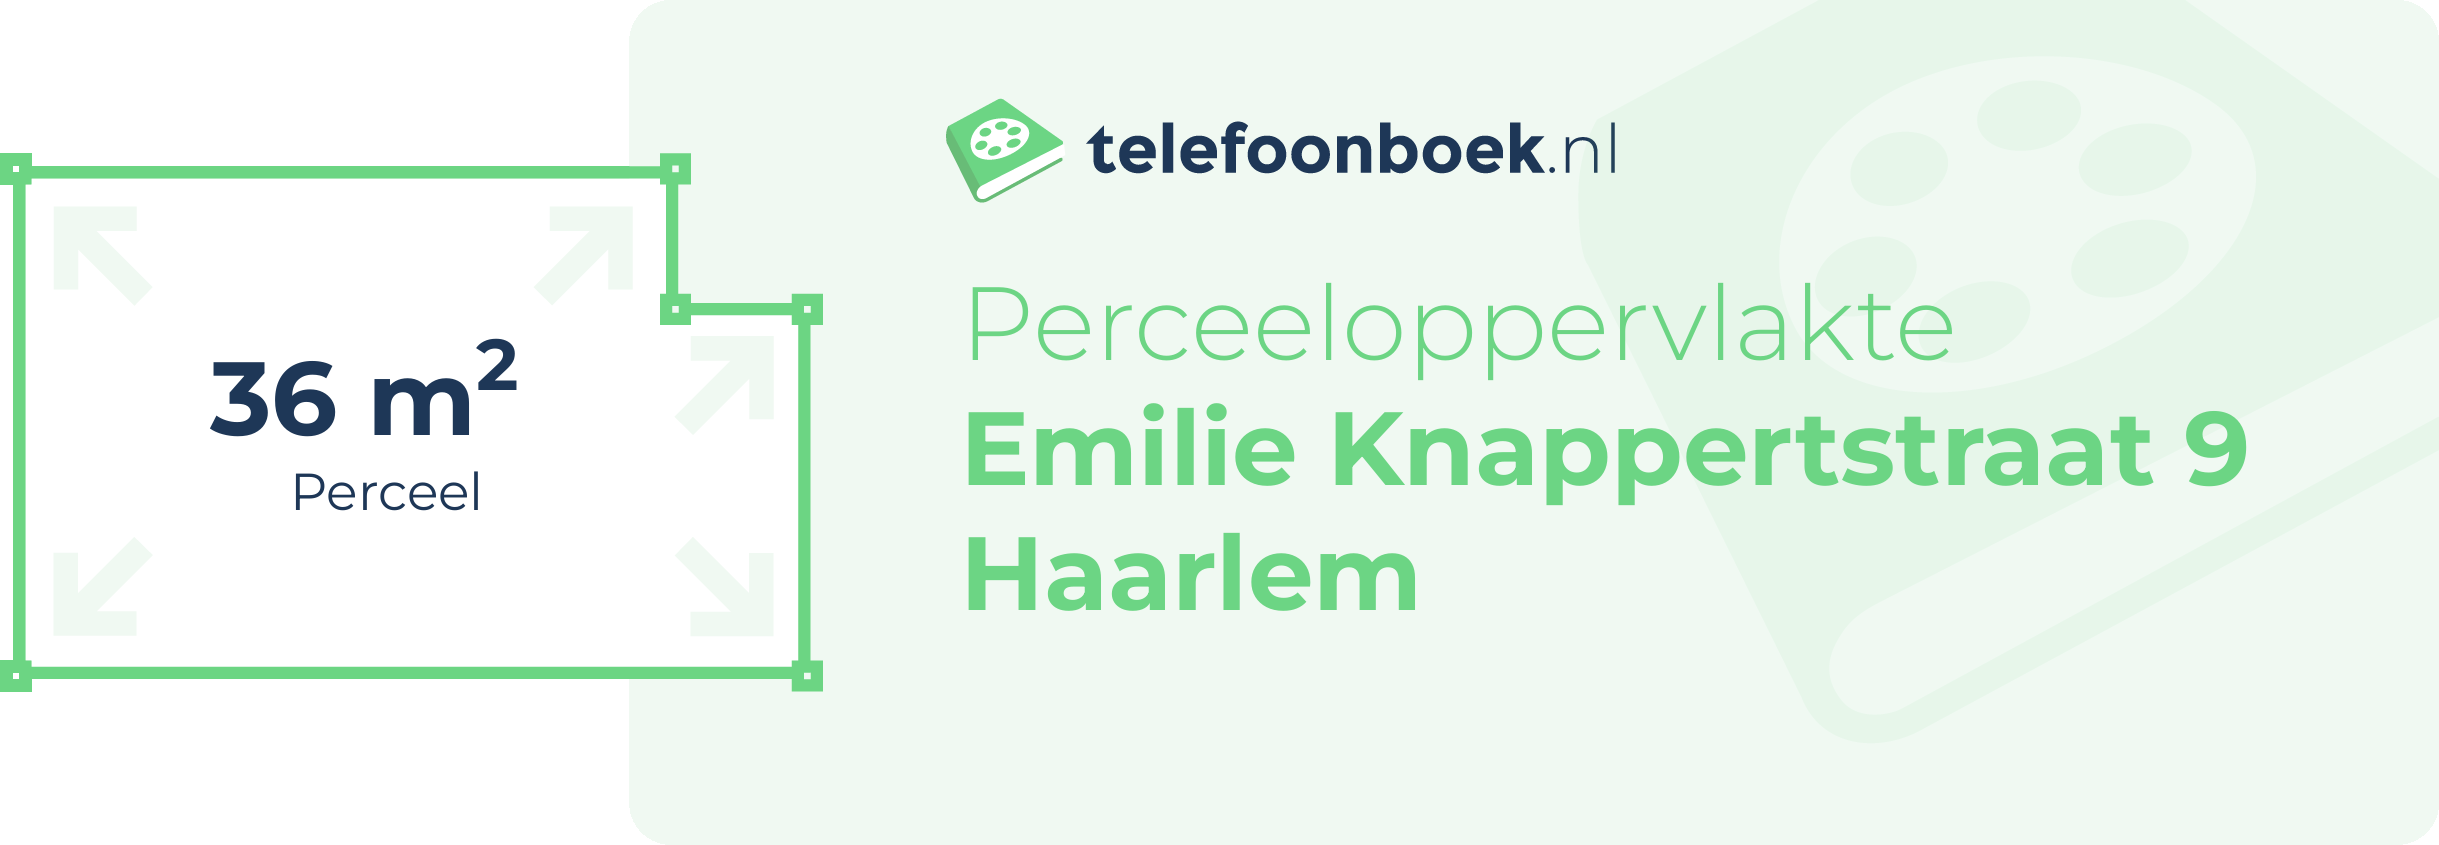 Perceeloppervlakte Emilie Knappertstraat 9 Haarlem